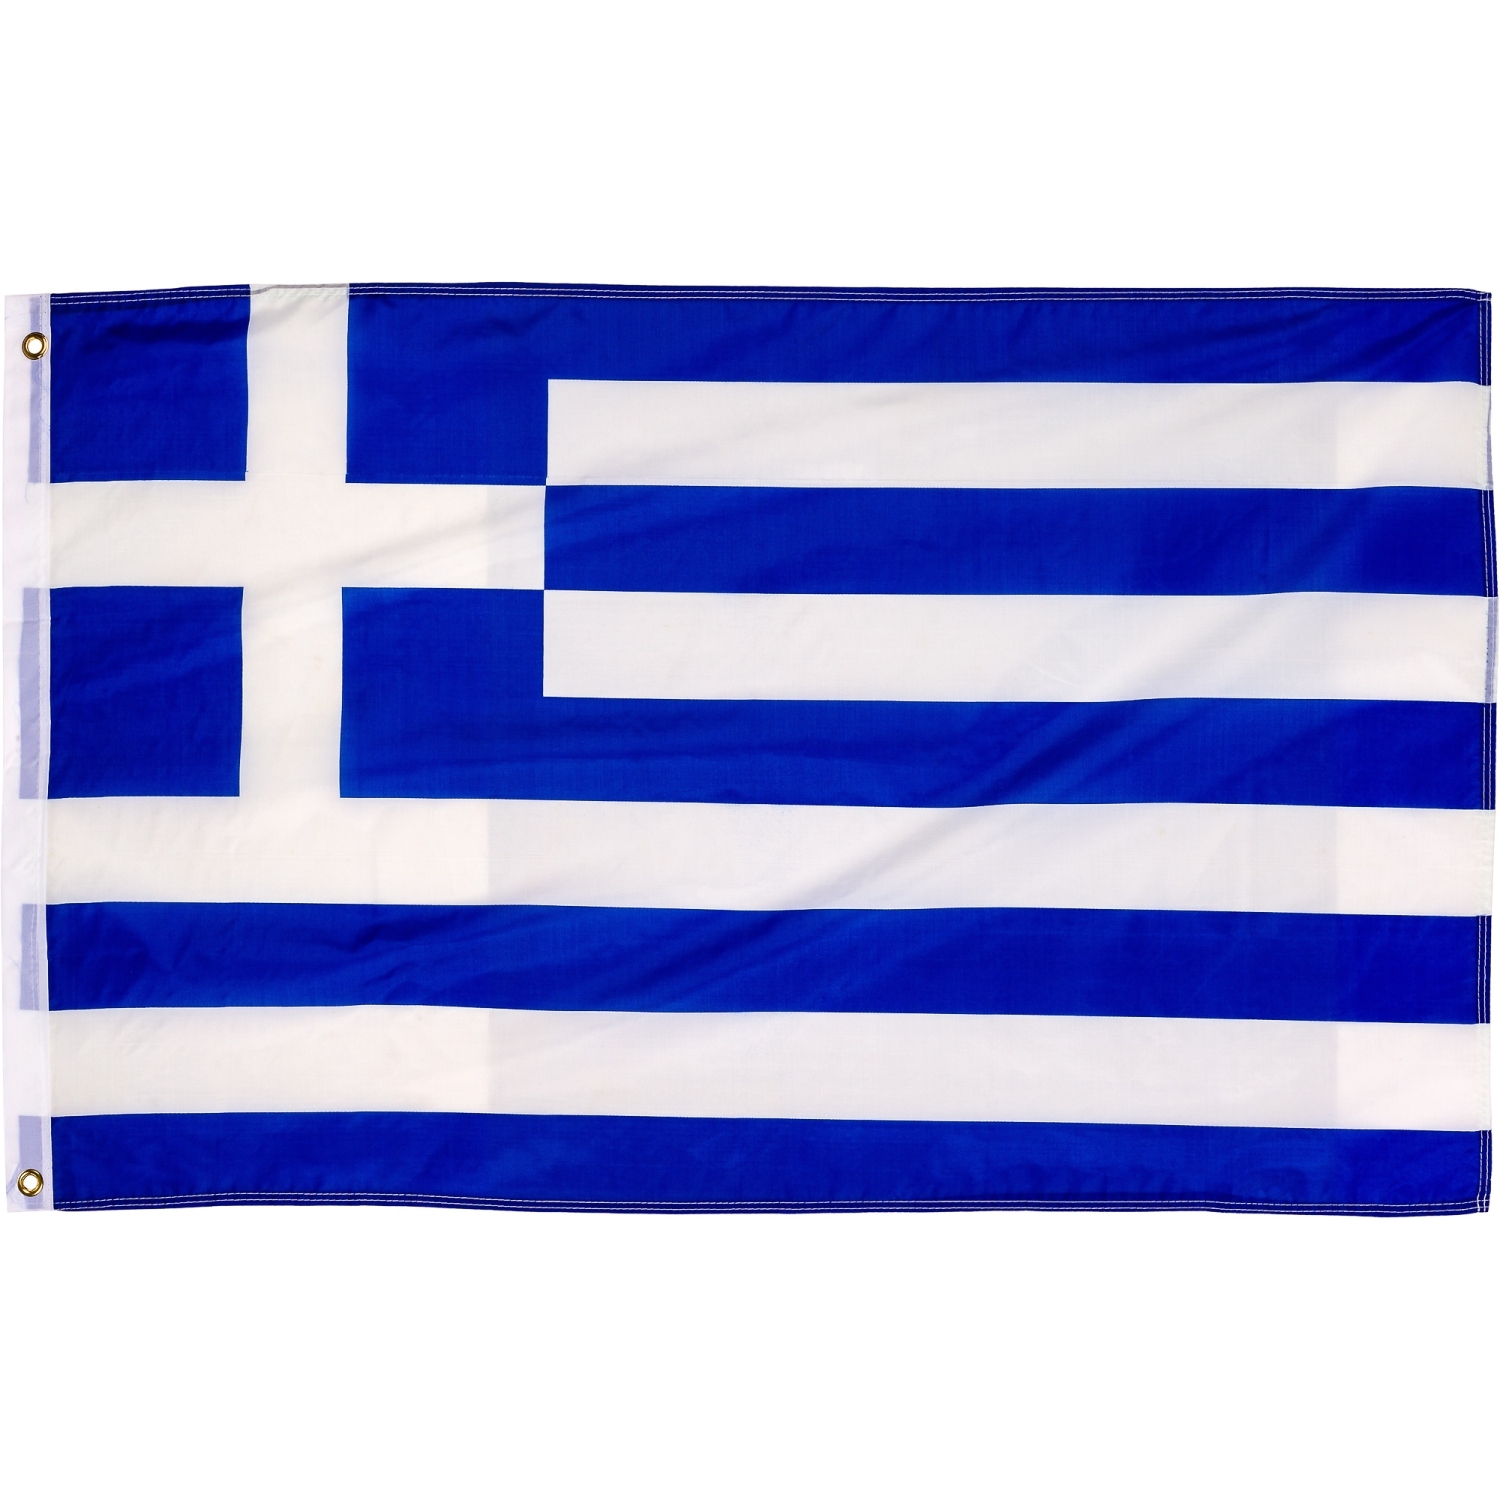 FLAGMASTER® Fahne Griechenland Flagge, Flagmaster, MARKEN